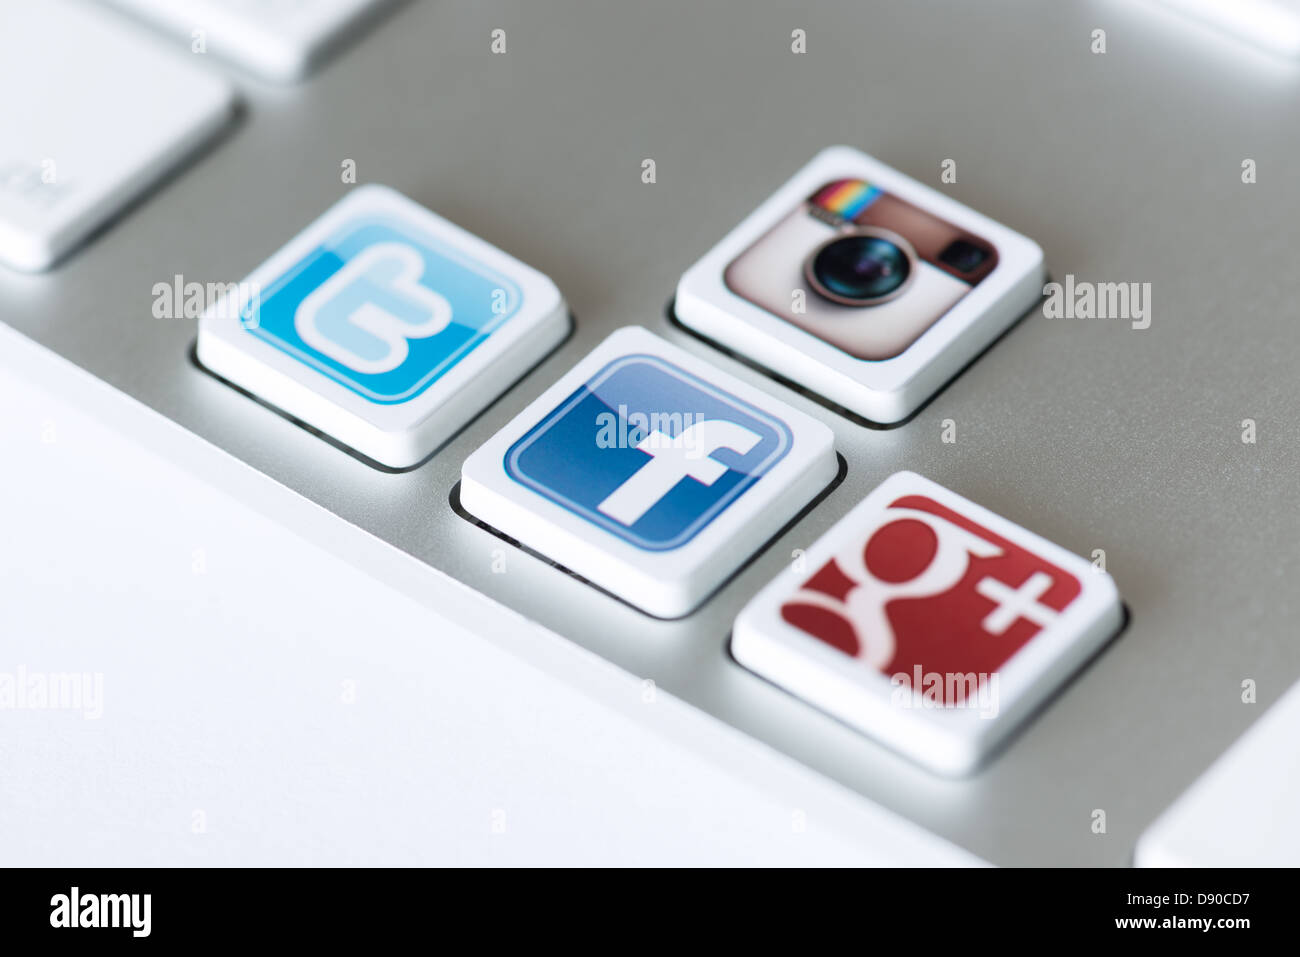 Iconos de medios sociales de Facebook, Twitter, Google Plus y Instagram colocados en las teclas del teclado de ordenador. Foto de stock